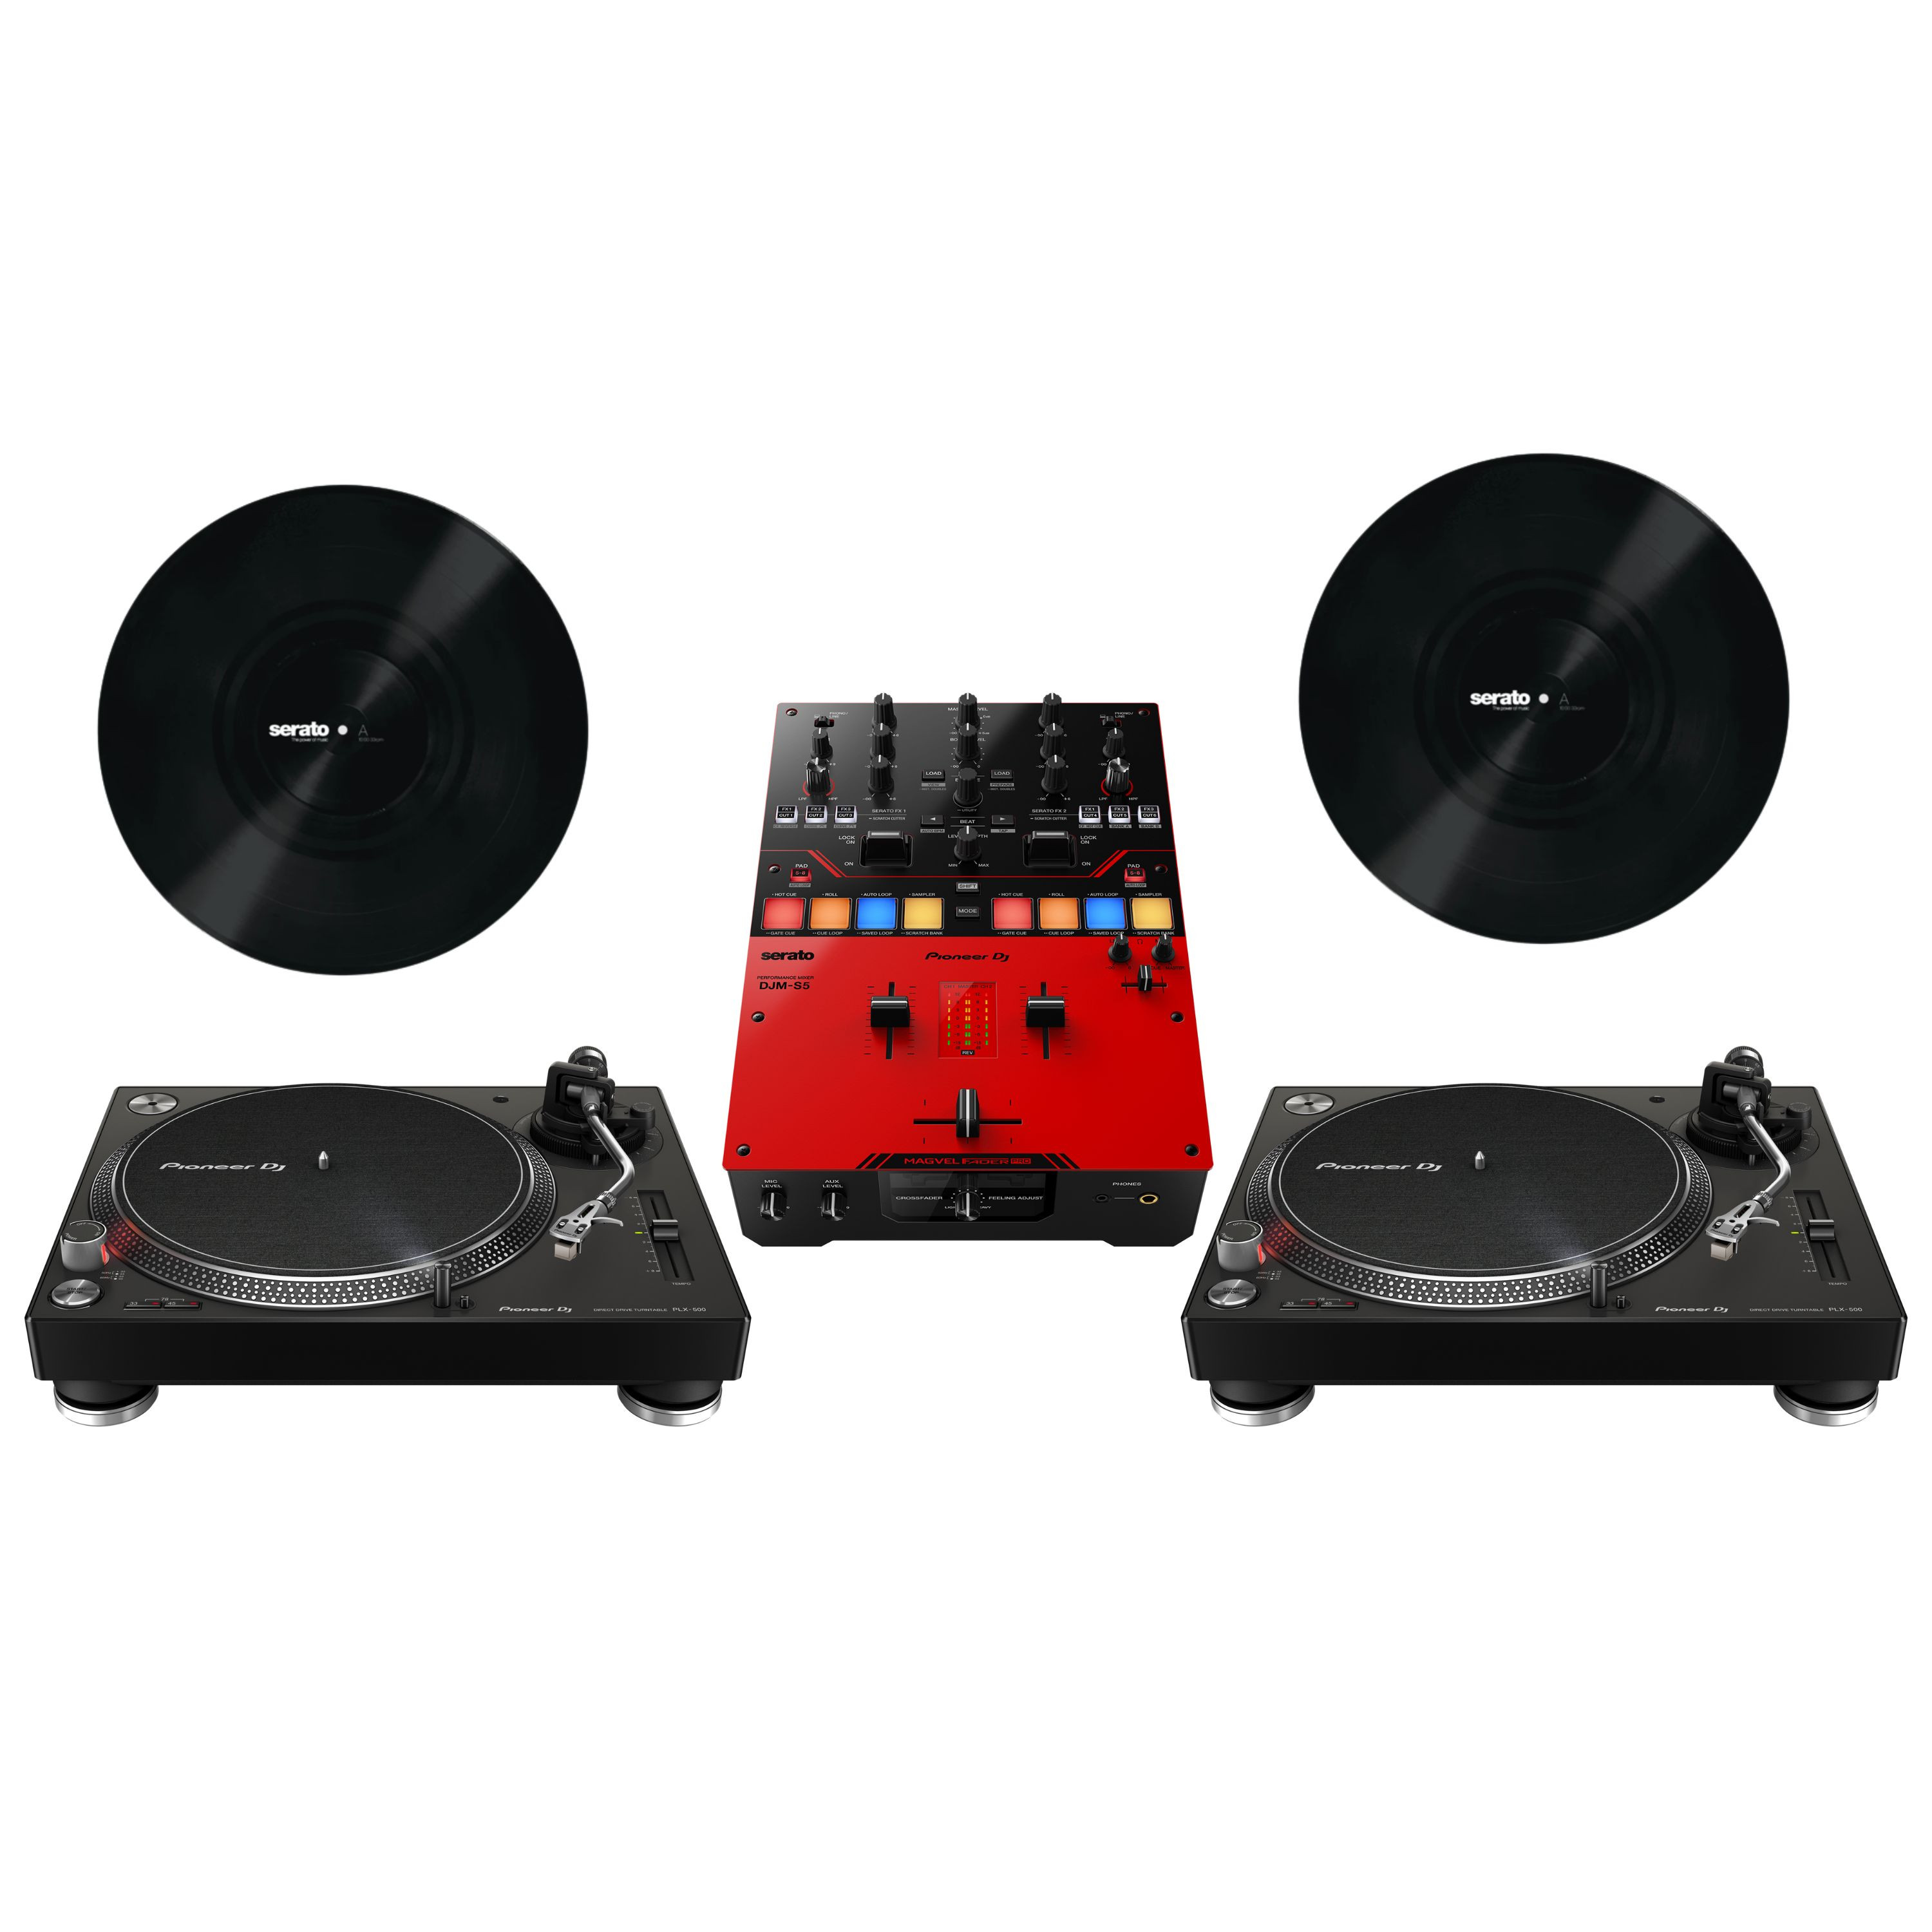 PACK DJM 450 PLX1000 - Pack Platines Vinyles / Mixage DJ - Packs DJ - DJ  Shop